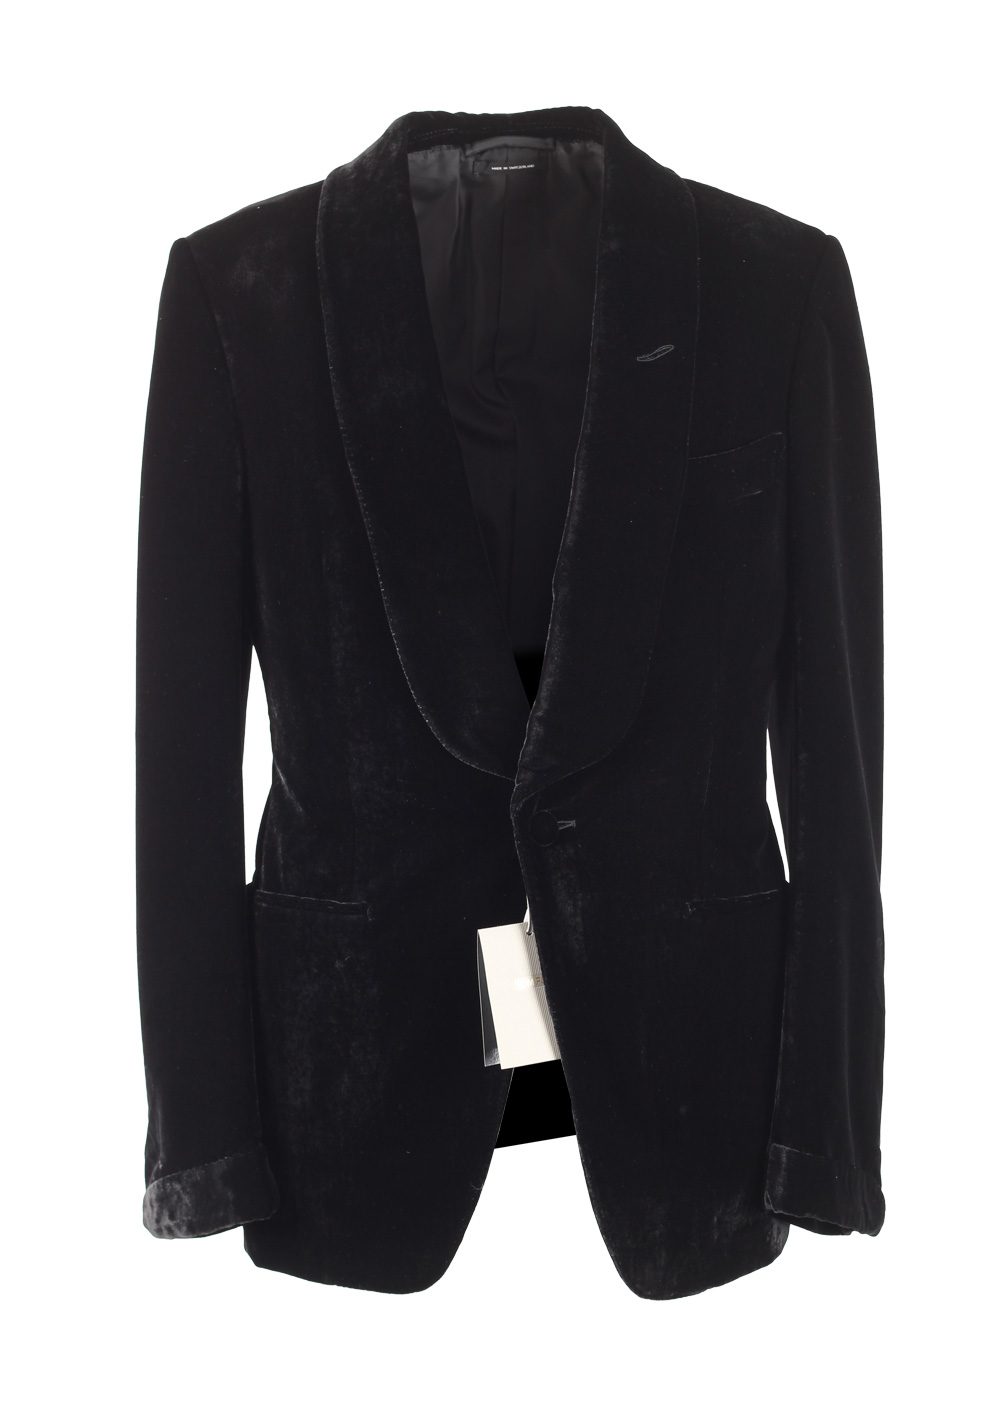 TOM FORD Buckley Black Velvet Sport Coat Tuxedo Dinner Jacket Size 48 ...